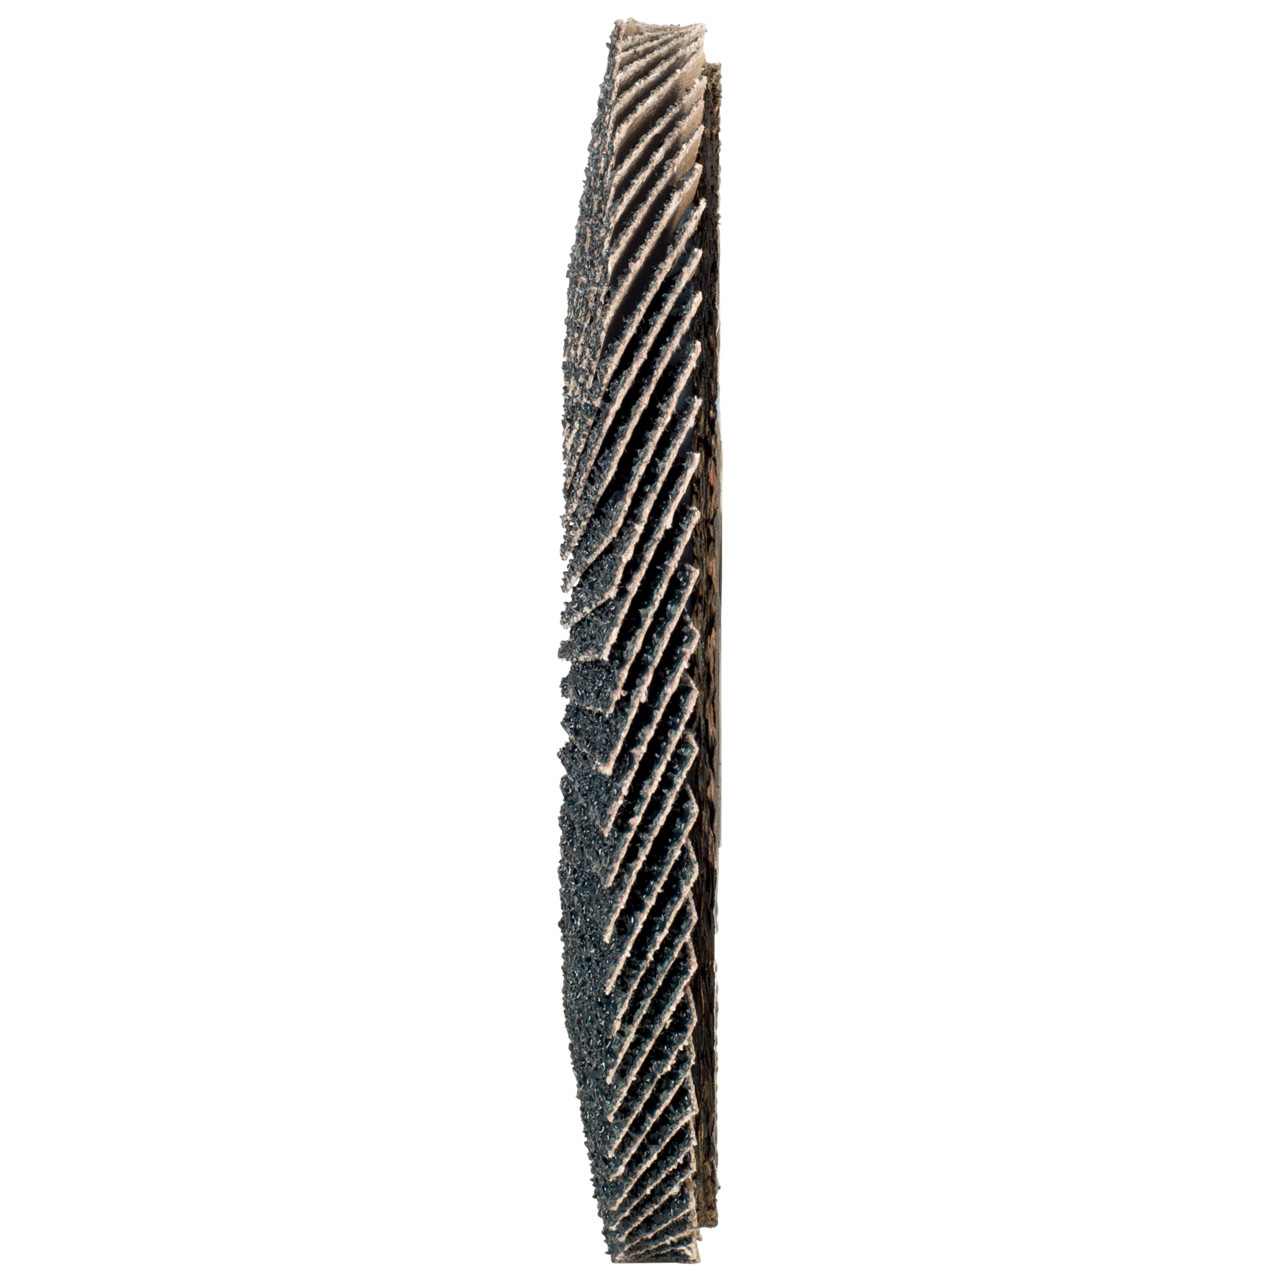 Rondella dentata Tyrolit DxH 125x22.2 2in1 per acciaio e acciaio inox, P80, forma: 28A - versione diritto (versione con corpo portante in fibra di vetro), Art. 668694